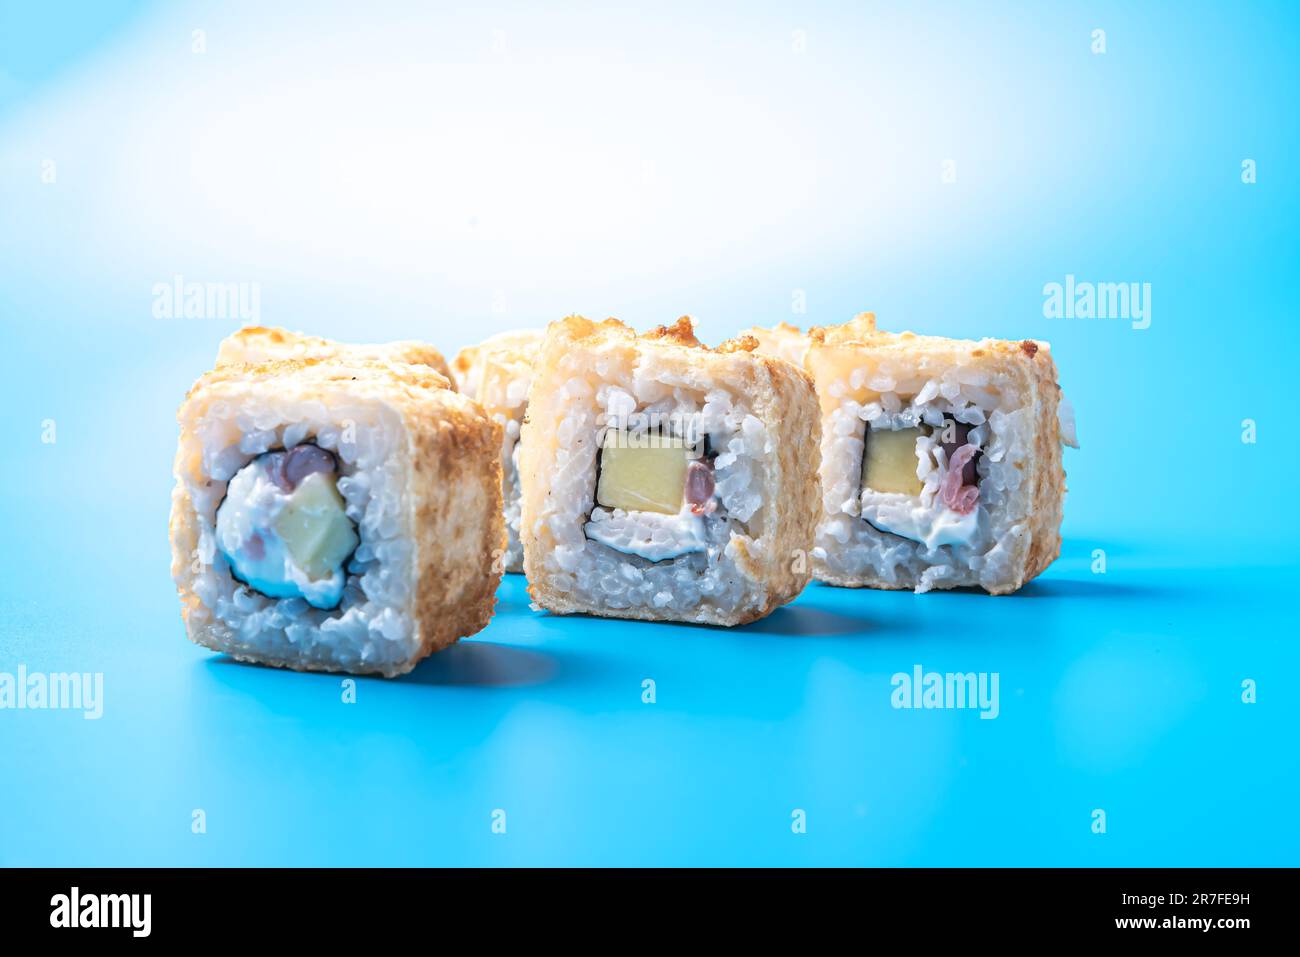 Petits pains à sushis aux crevettes, concombres et fromages, cuits dans une omelette, sur fond bleu. Photo de haute qualité Banque D'Images